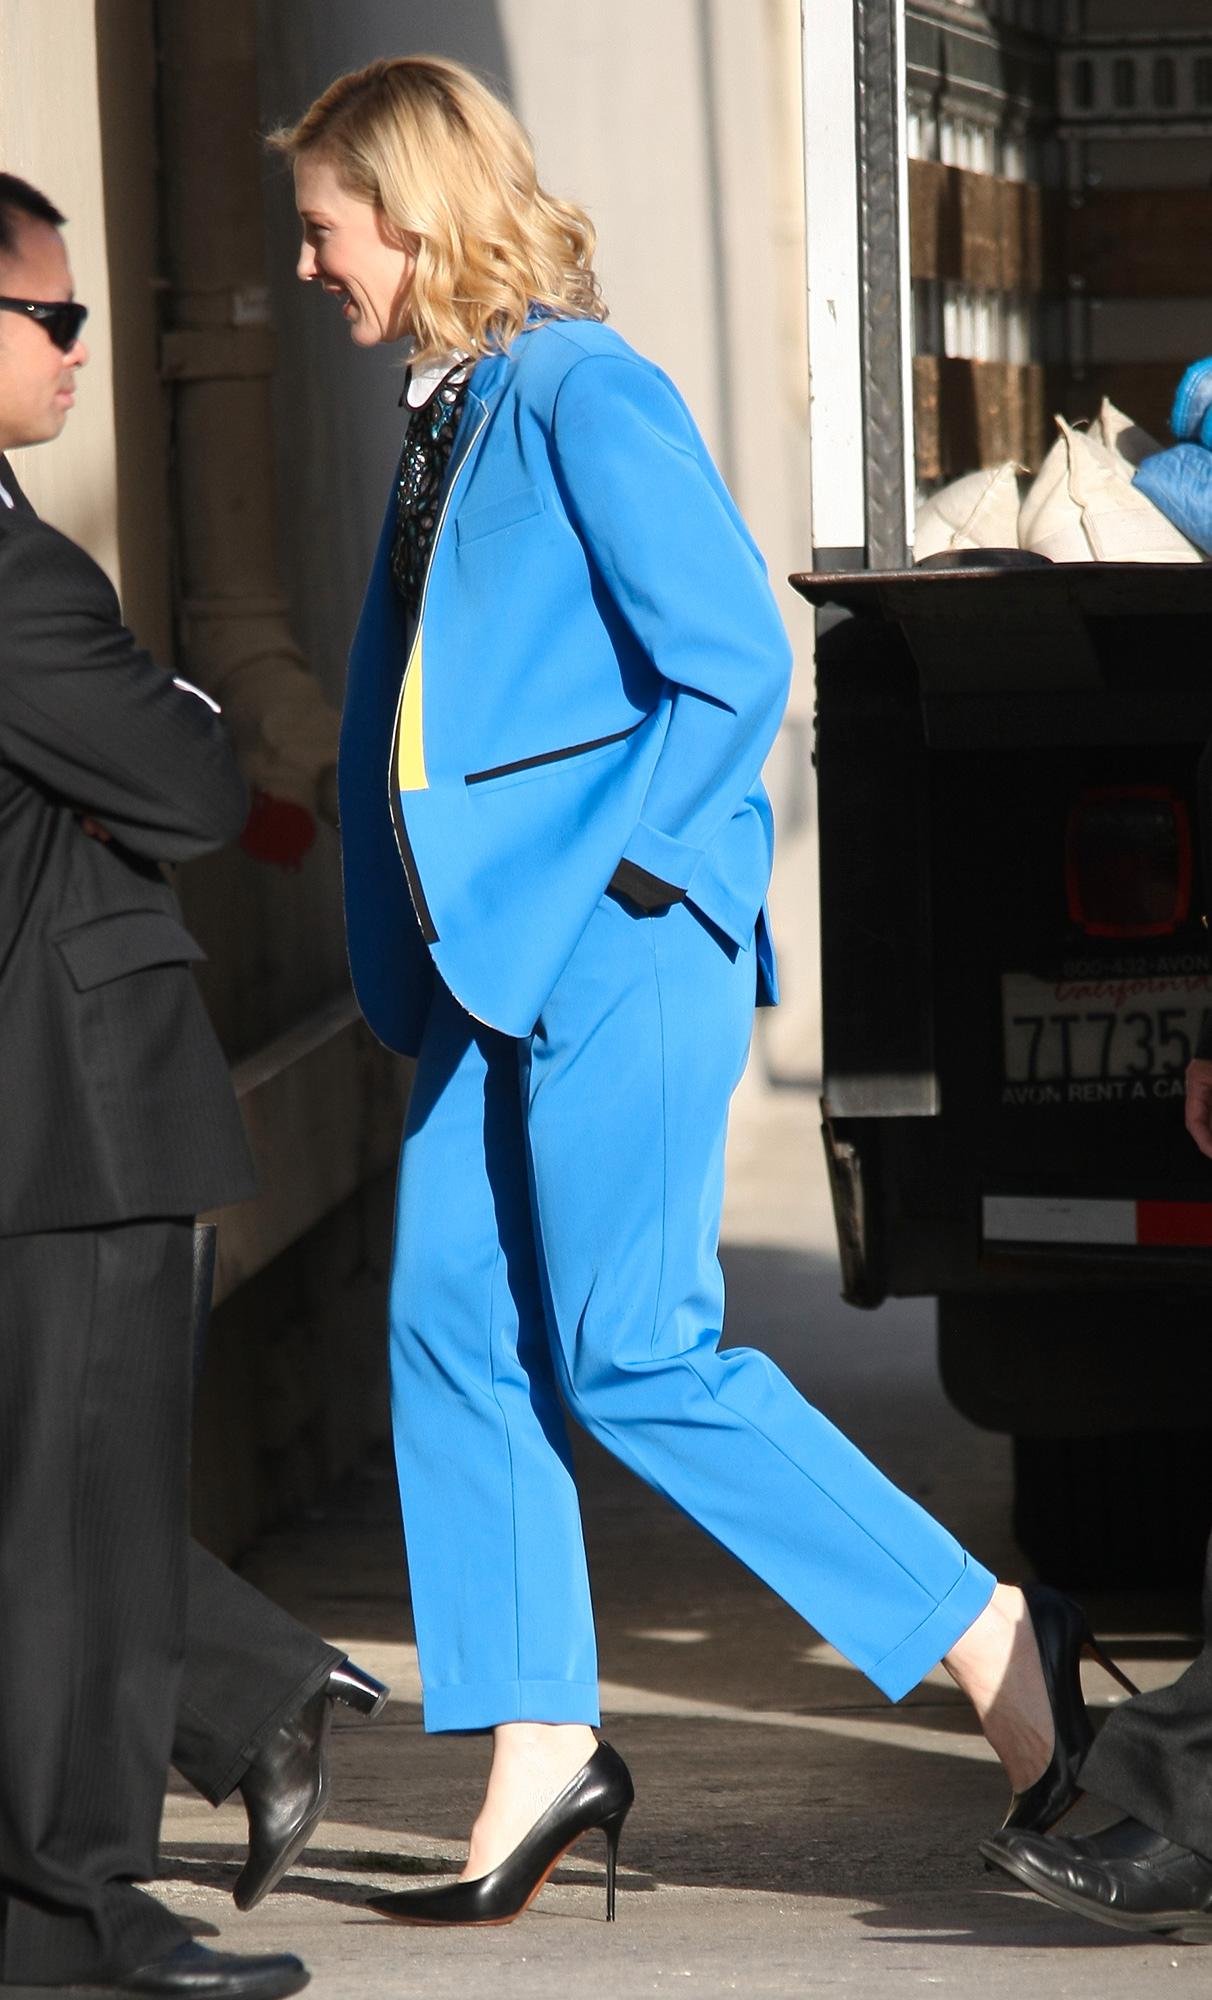 Cate Blanchett Cate valde en härligt färgglad kostym i avslappnad passform. Supersnyggt tycker vi!